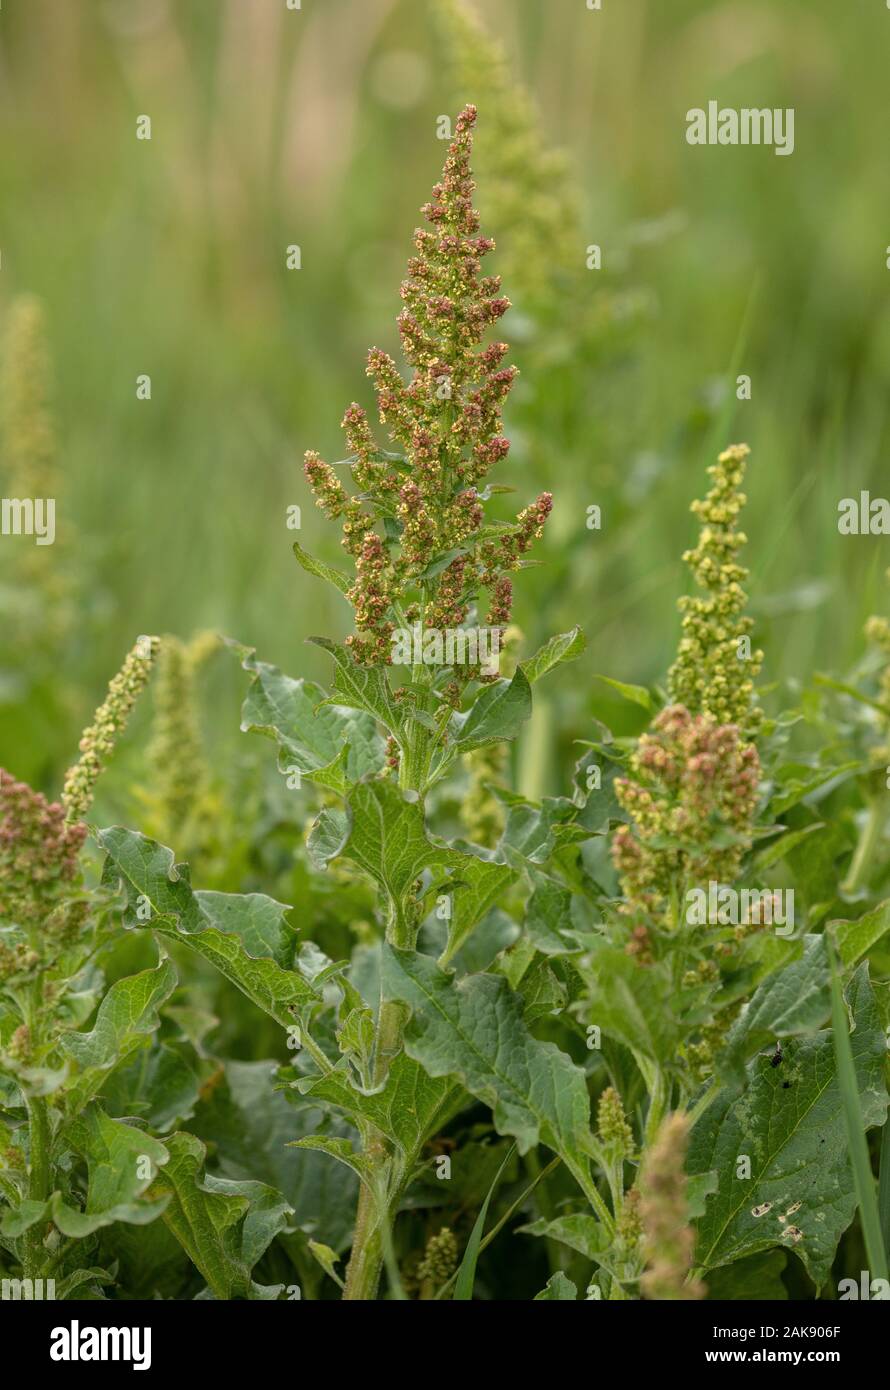 Good-King-Henry, Blitum bonus-henricus, in flower in the wild. Also grown in gardens. Stock Photo